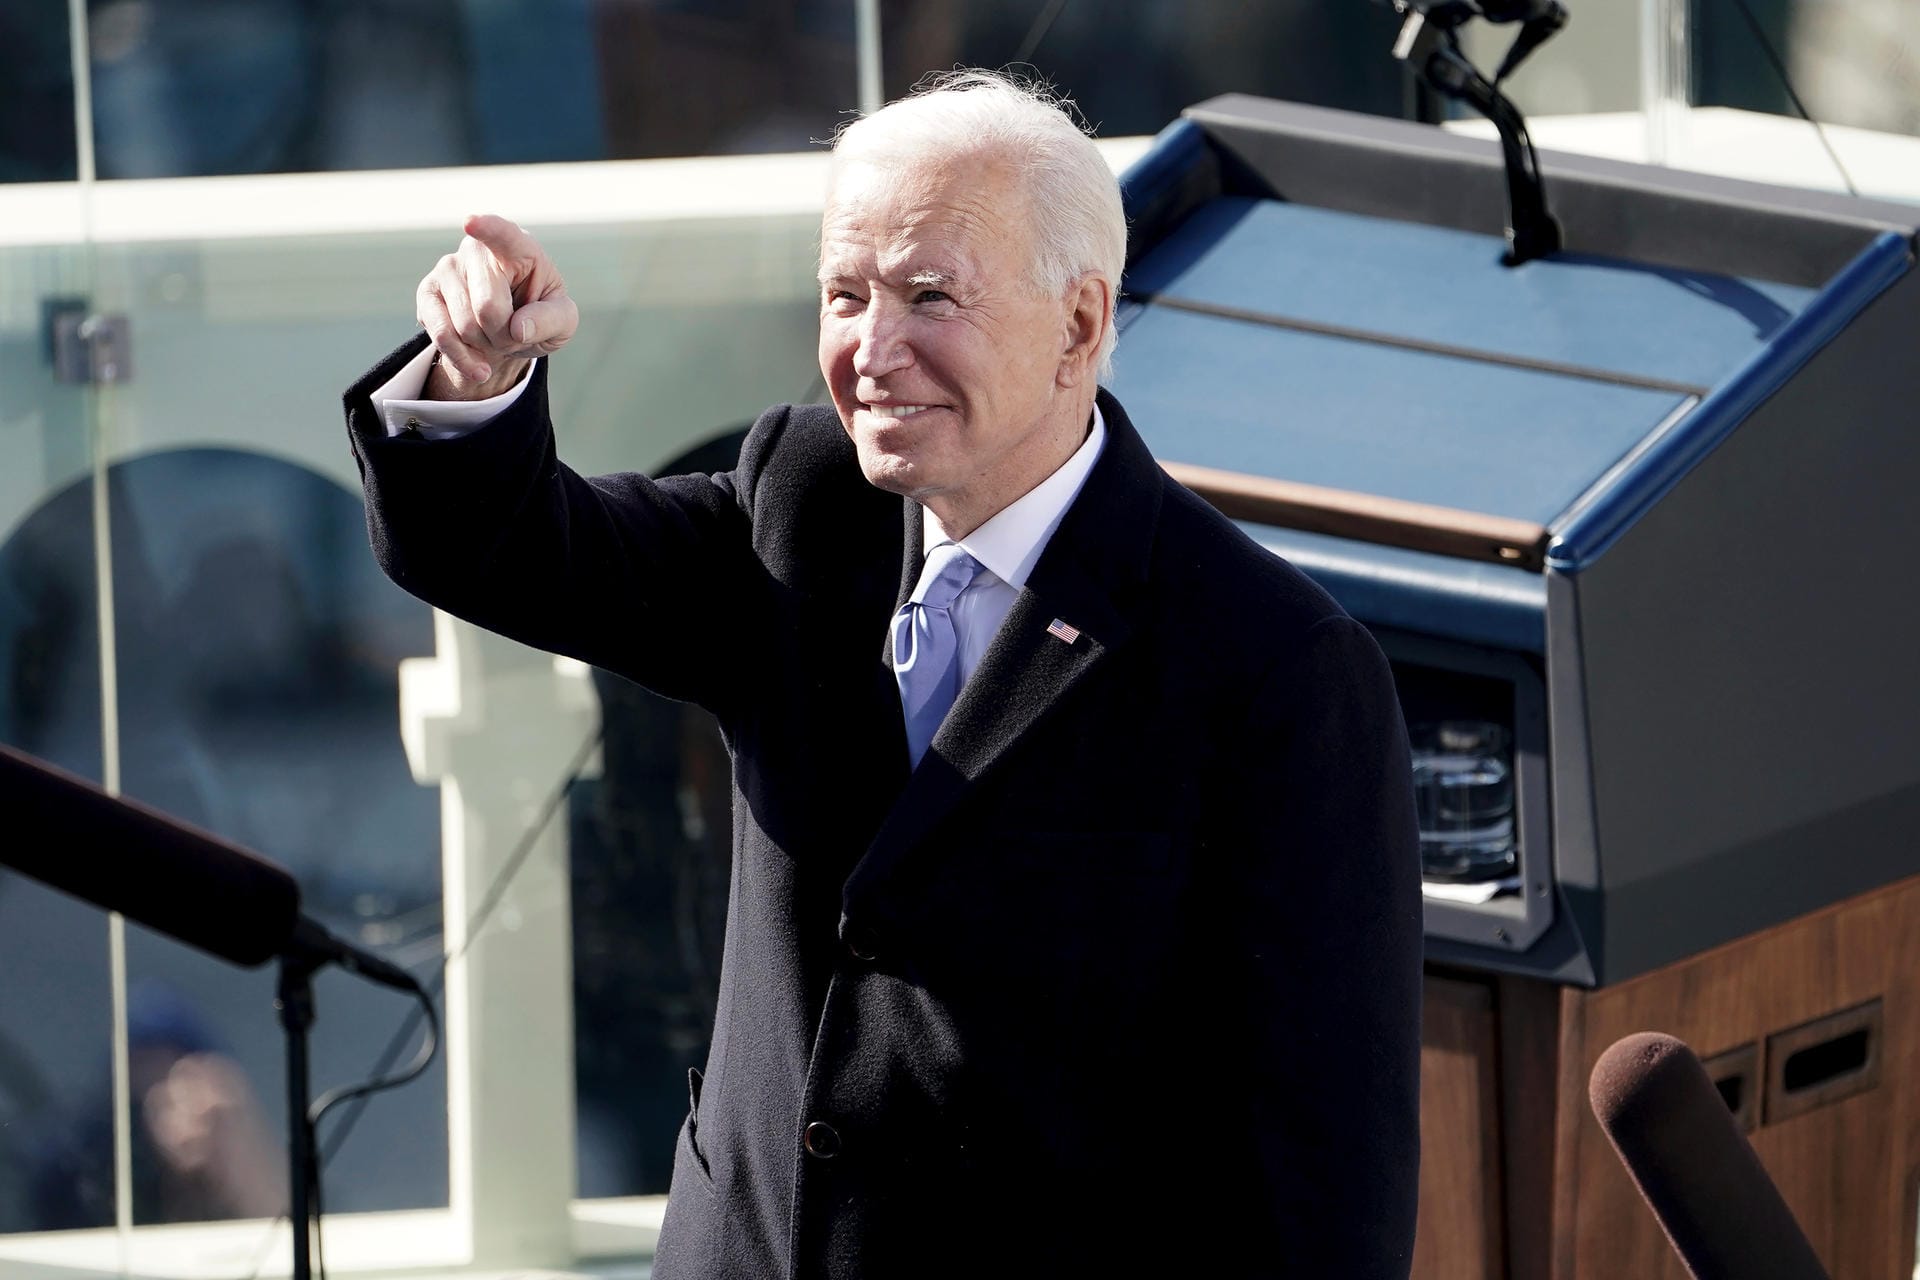 Joe Biden ist am 20. Januar zum 46. Präsidenten der Vereinigten Staaten von Amerika vereidigt worden. Er zieht damit als Nachfolger vom umstrittenen Präsidenten Donald Trump ins Weiße Haus ein. Sehen Sie in dieser Fotoshow die bewegendsten Momente der Amtseinführung.